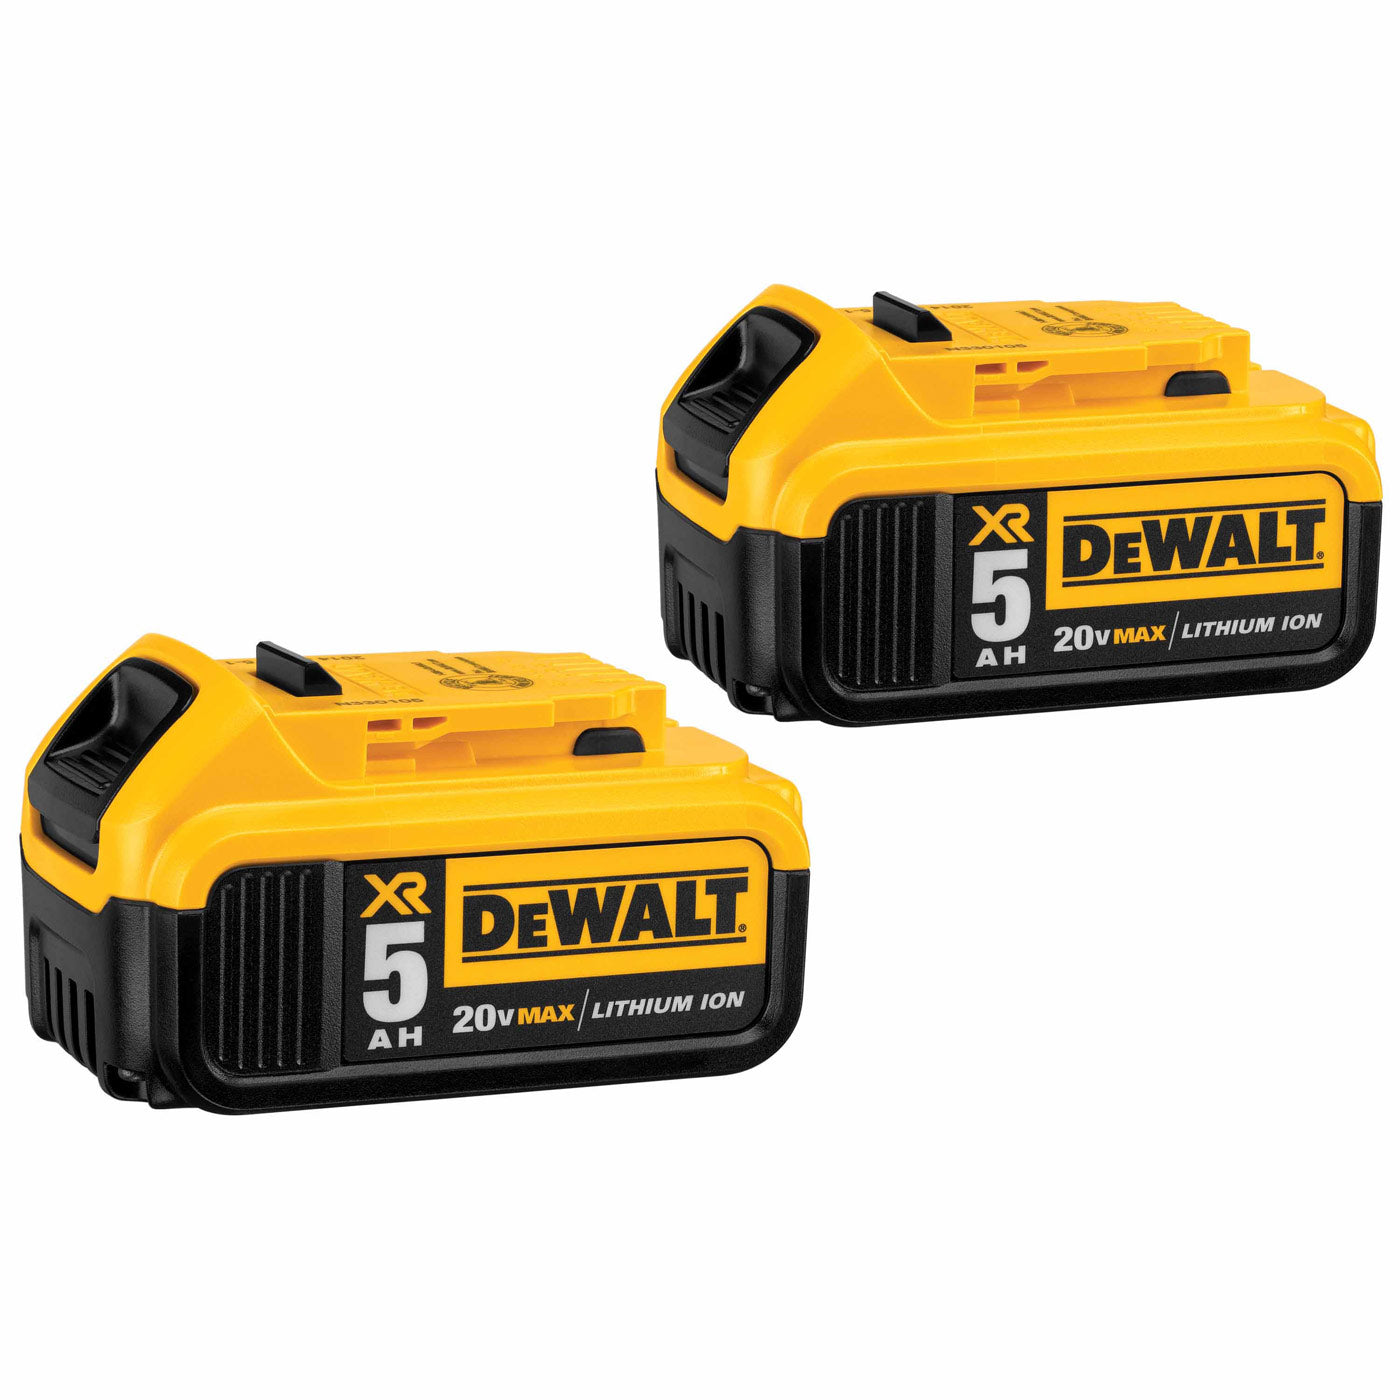 DeWalt DCB205-2 20V MAX 5Ah Battery 2-Pack